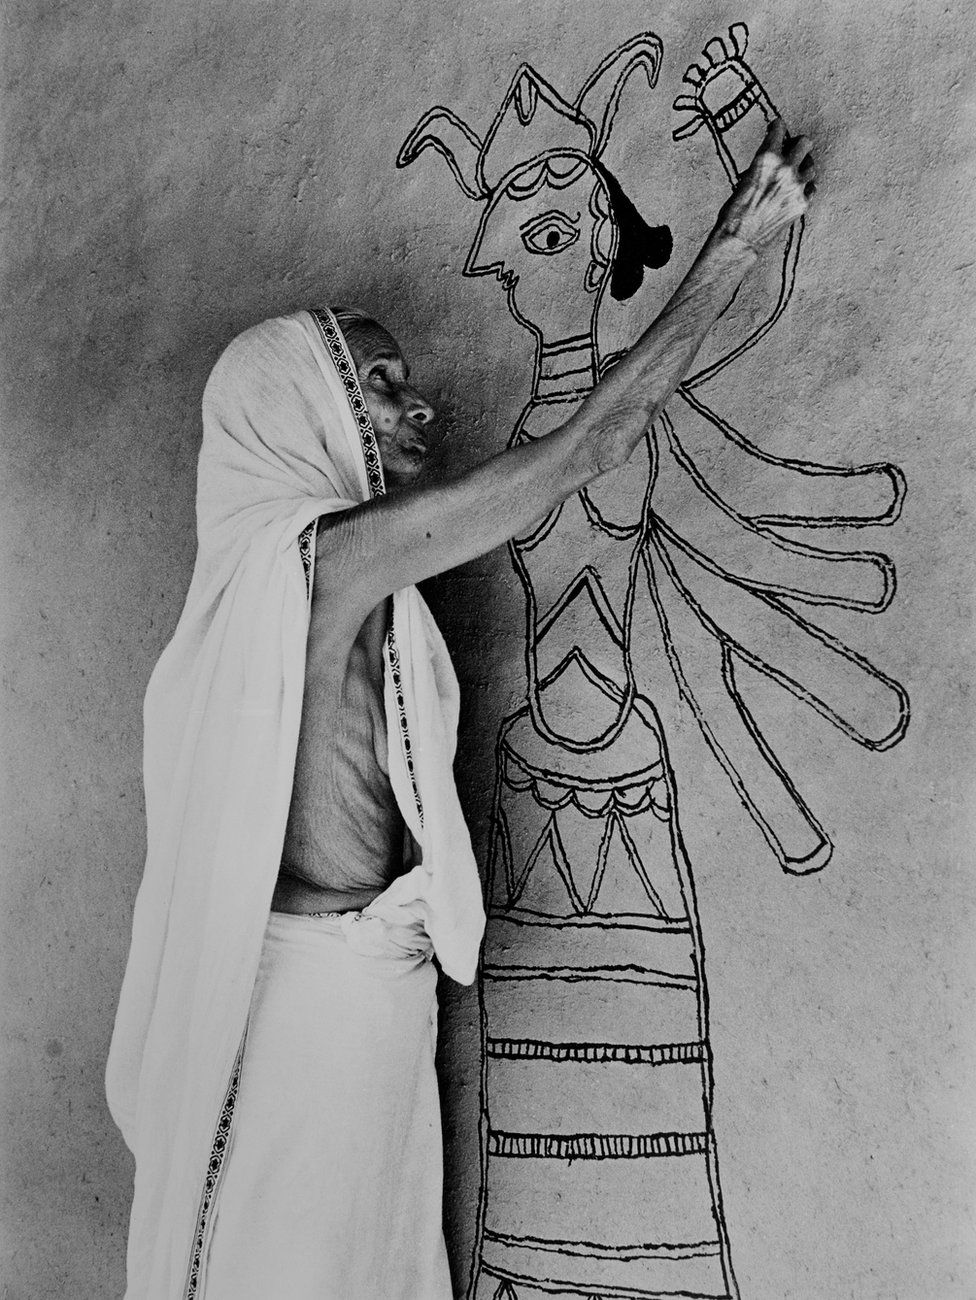 ผู้หญิงจากเมืองมิถิลากำลังสร้างจิตรกรรมฝาผนังรูปพระแม่ทุรคาระยะแรกในปี พ.ศ. 2520